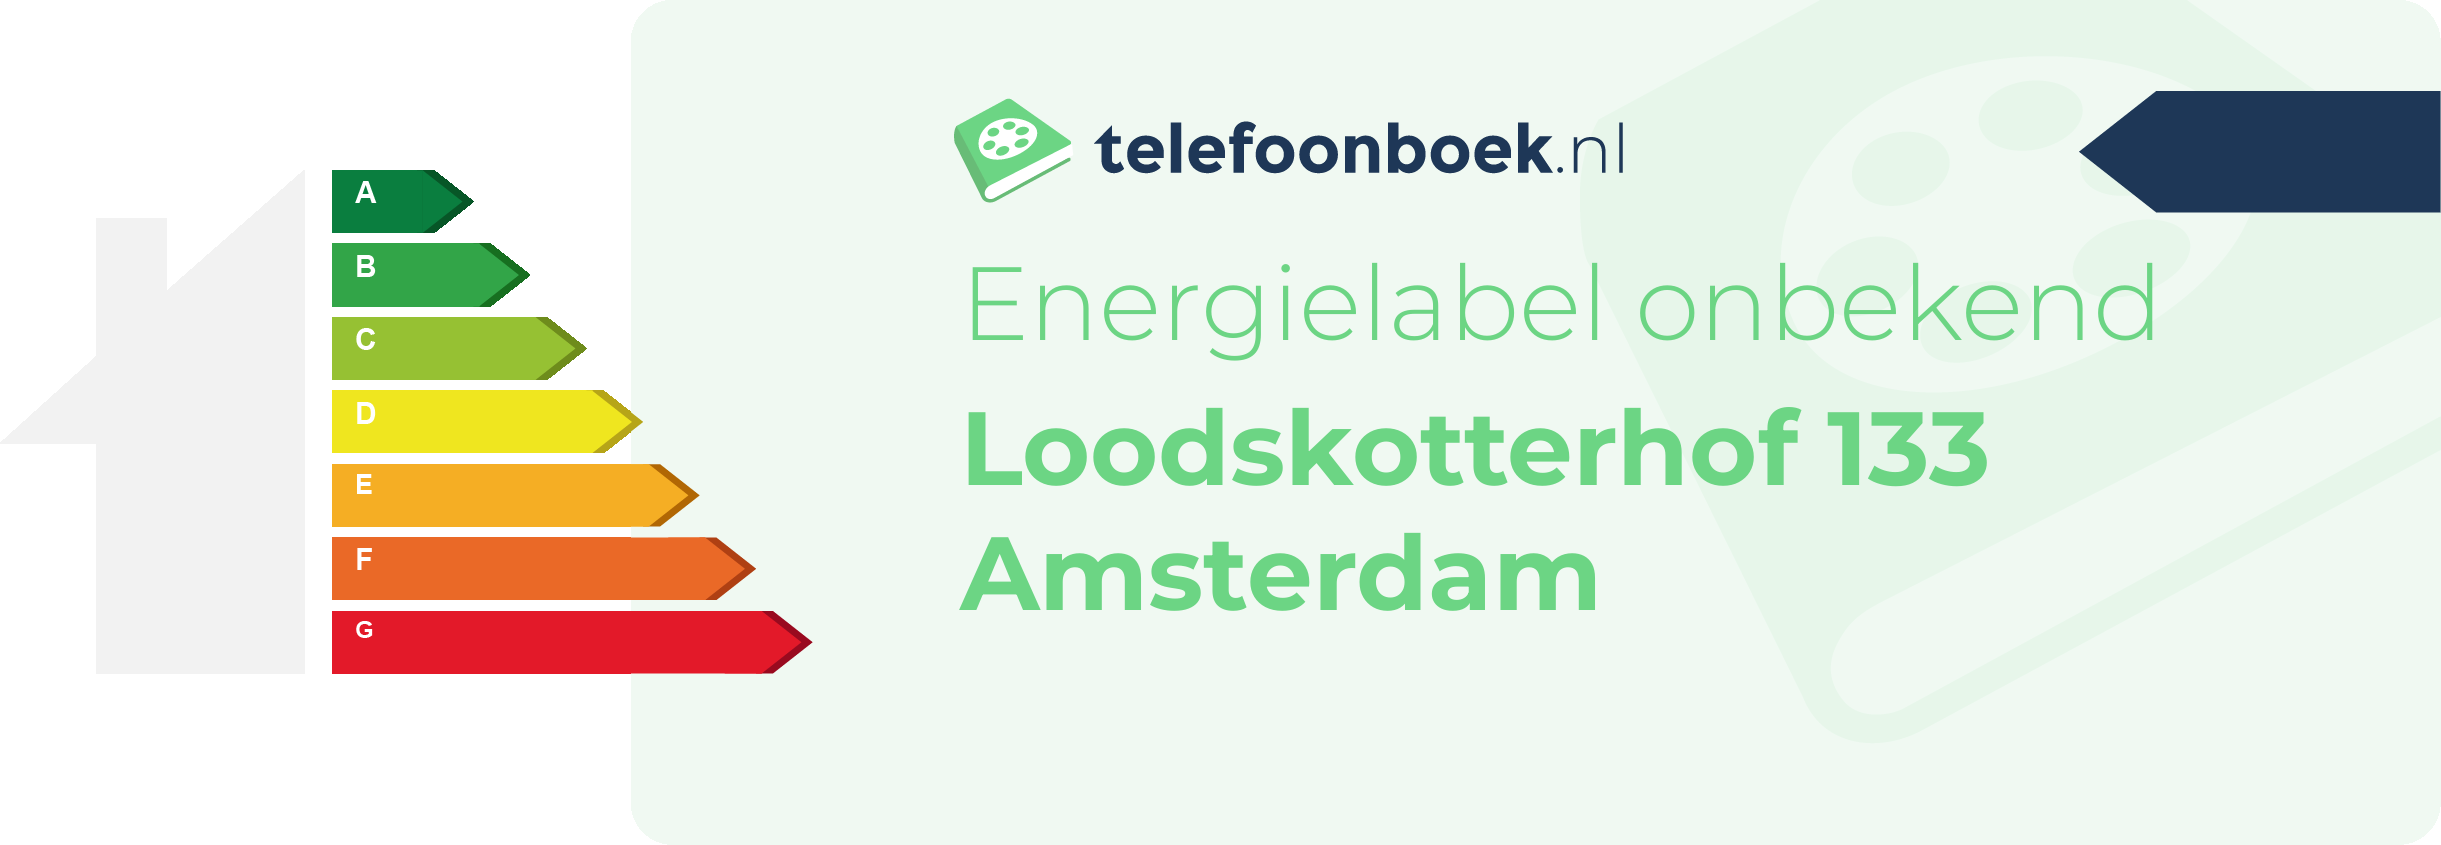 Energielabel Loodskotterhof 133 Amsterdam